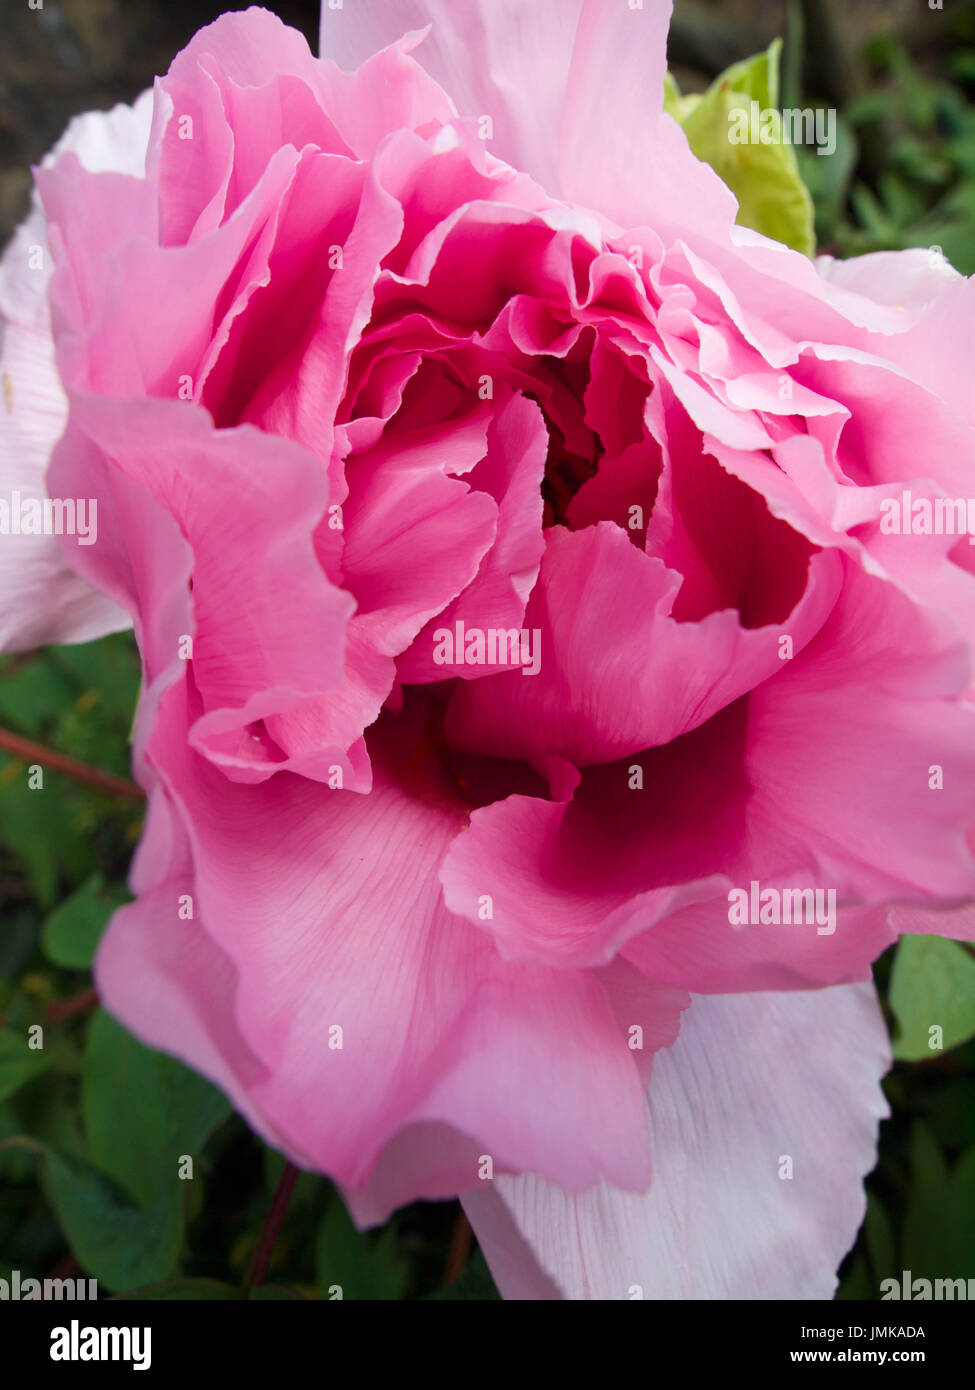 Nahaufnahme, verträumt, weichen Fokus einer zarten, rosa Pfingstrose Blume. Stockfoto